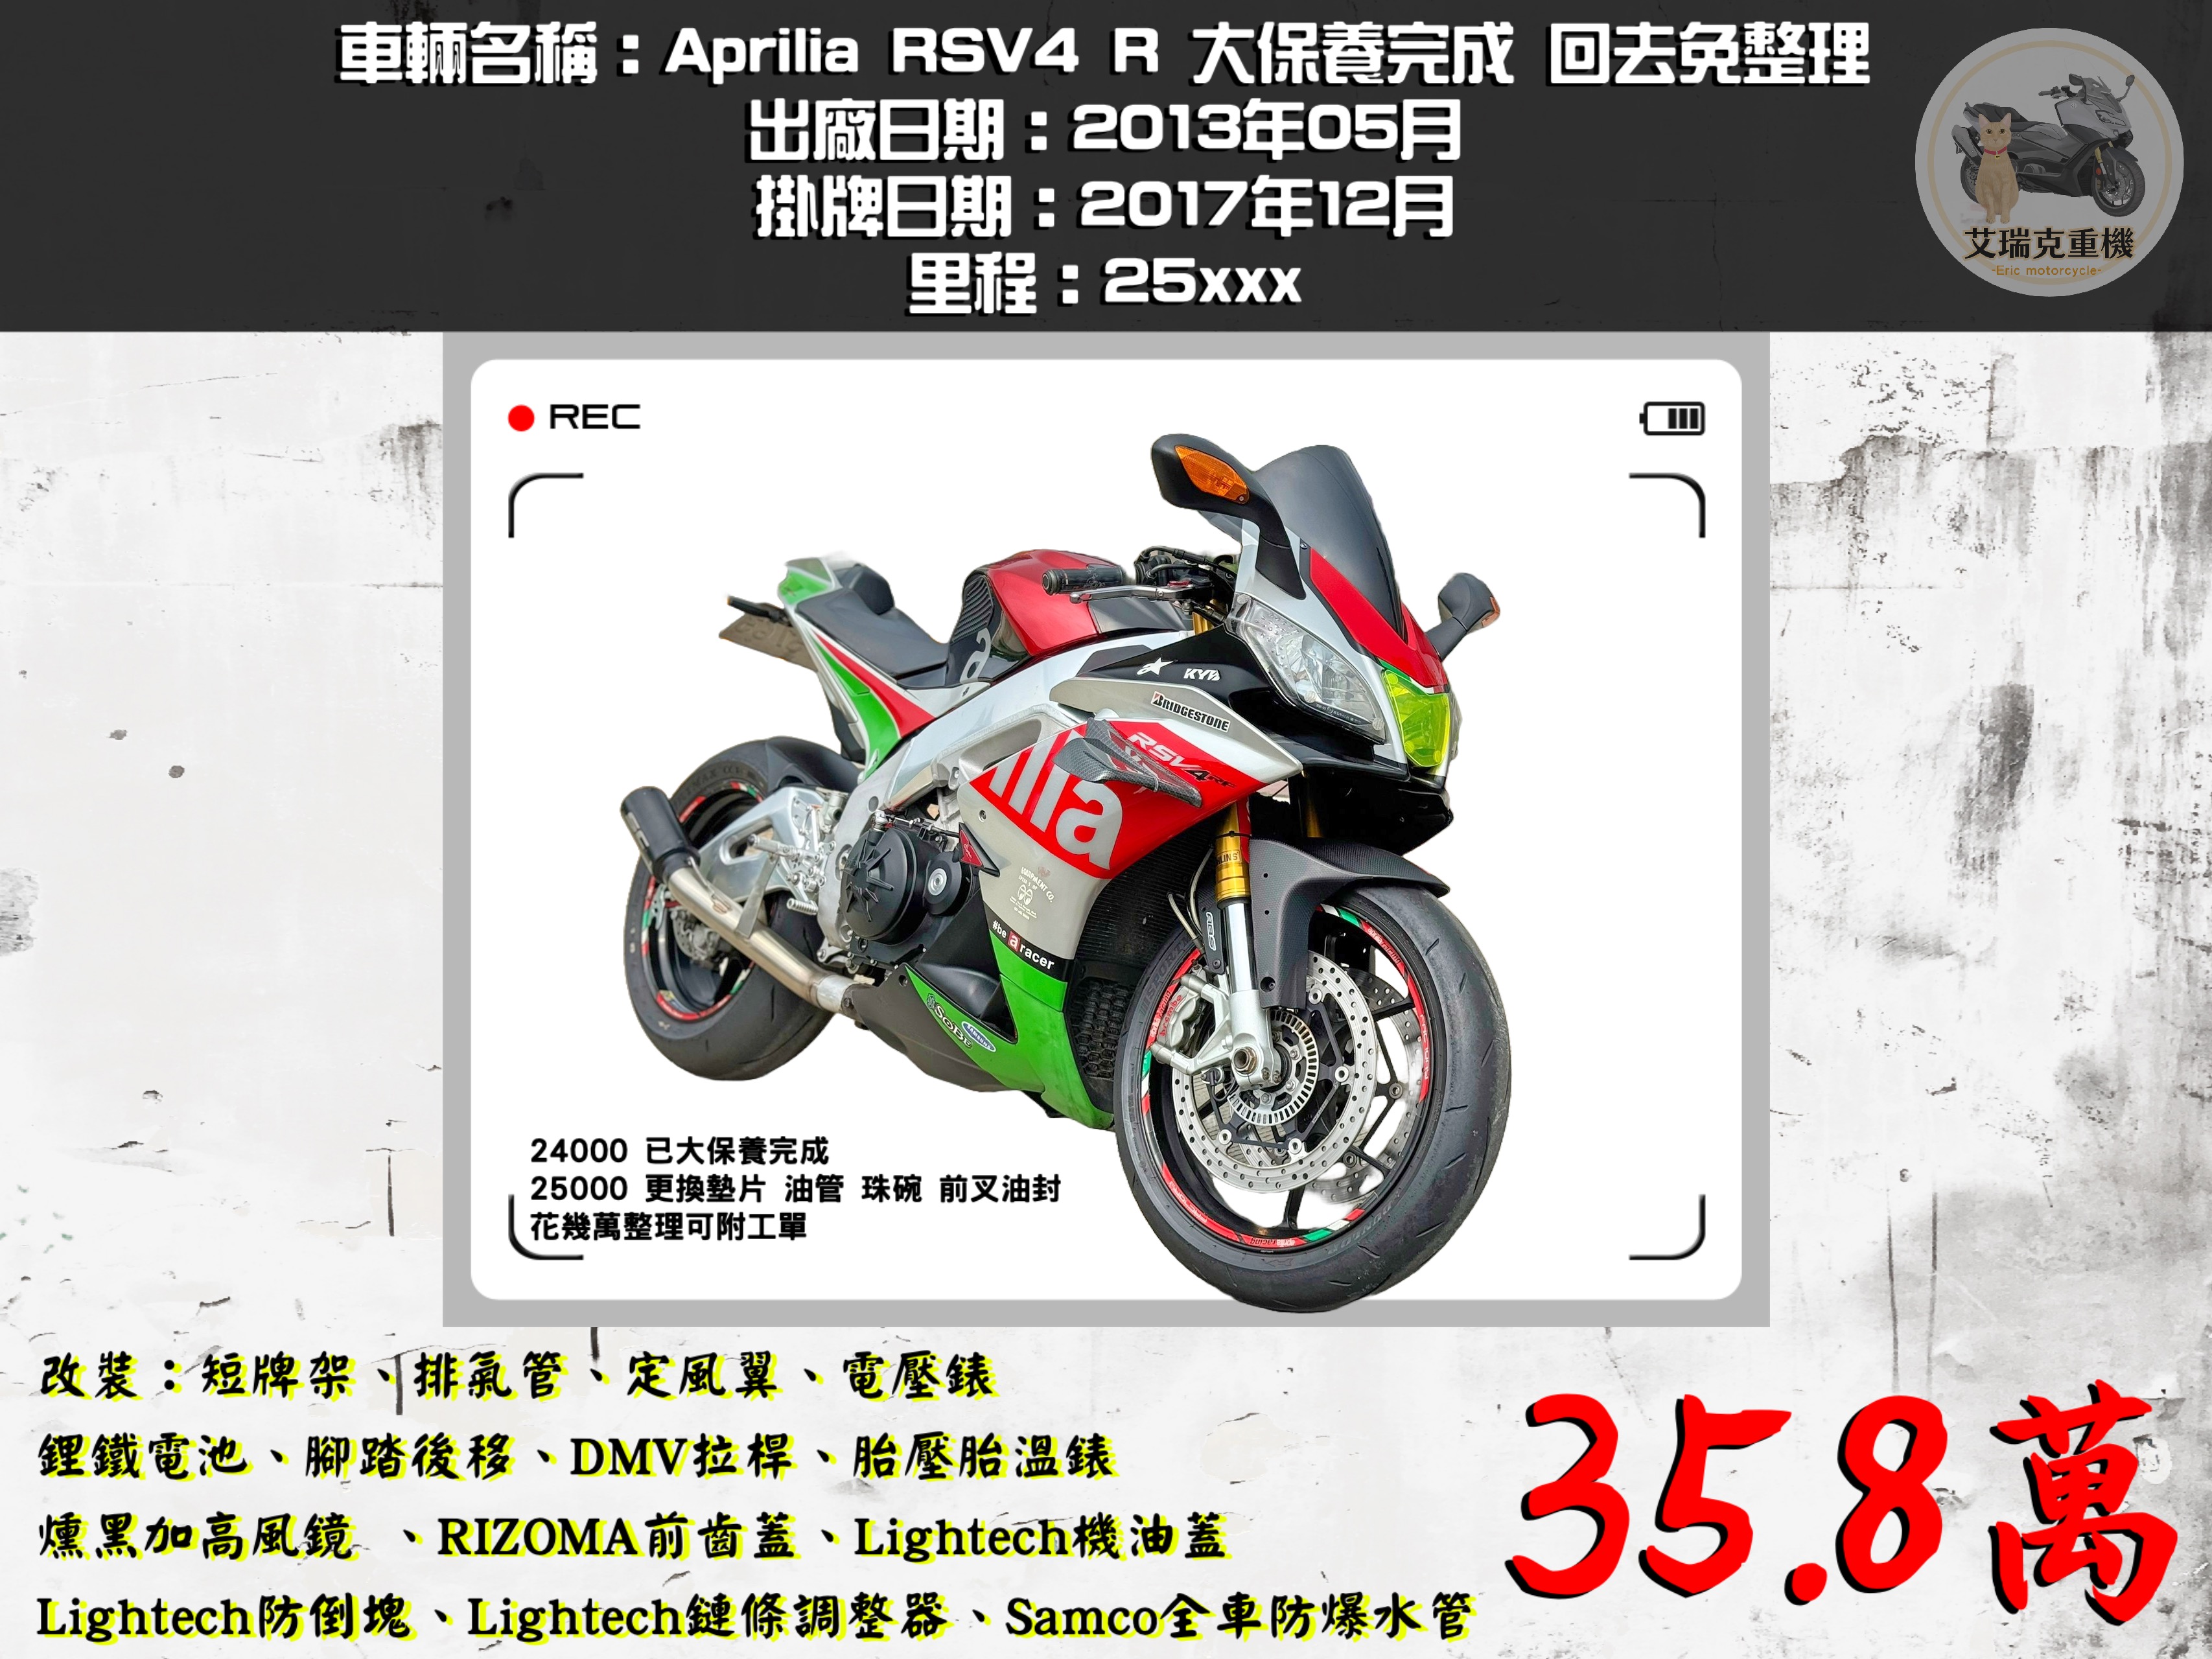 【艾瑞克重機】APRILIA RSV4 - 「Webike-摩托車市」 Aprilia RSV4 R大保養完成 回去免整理